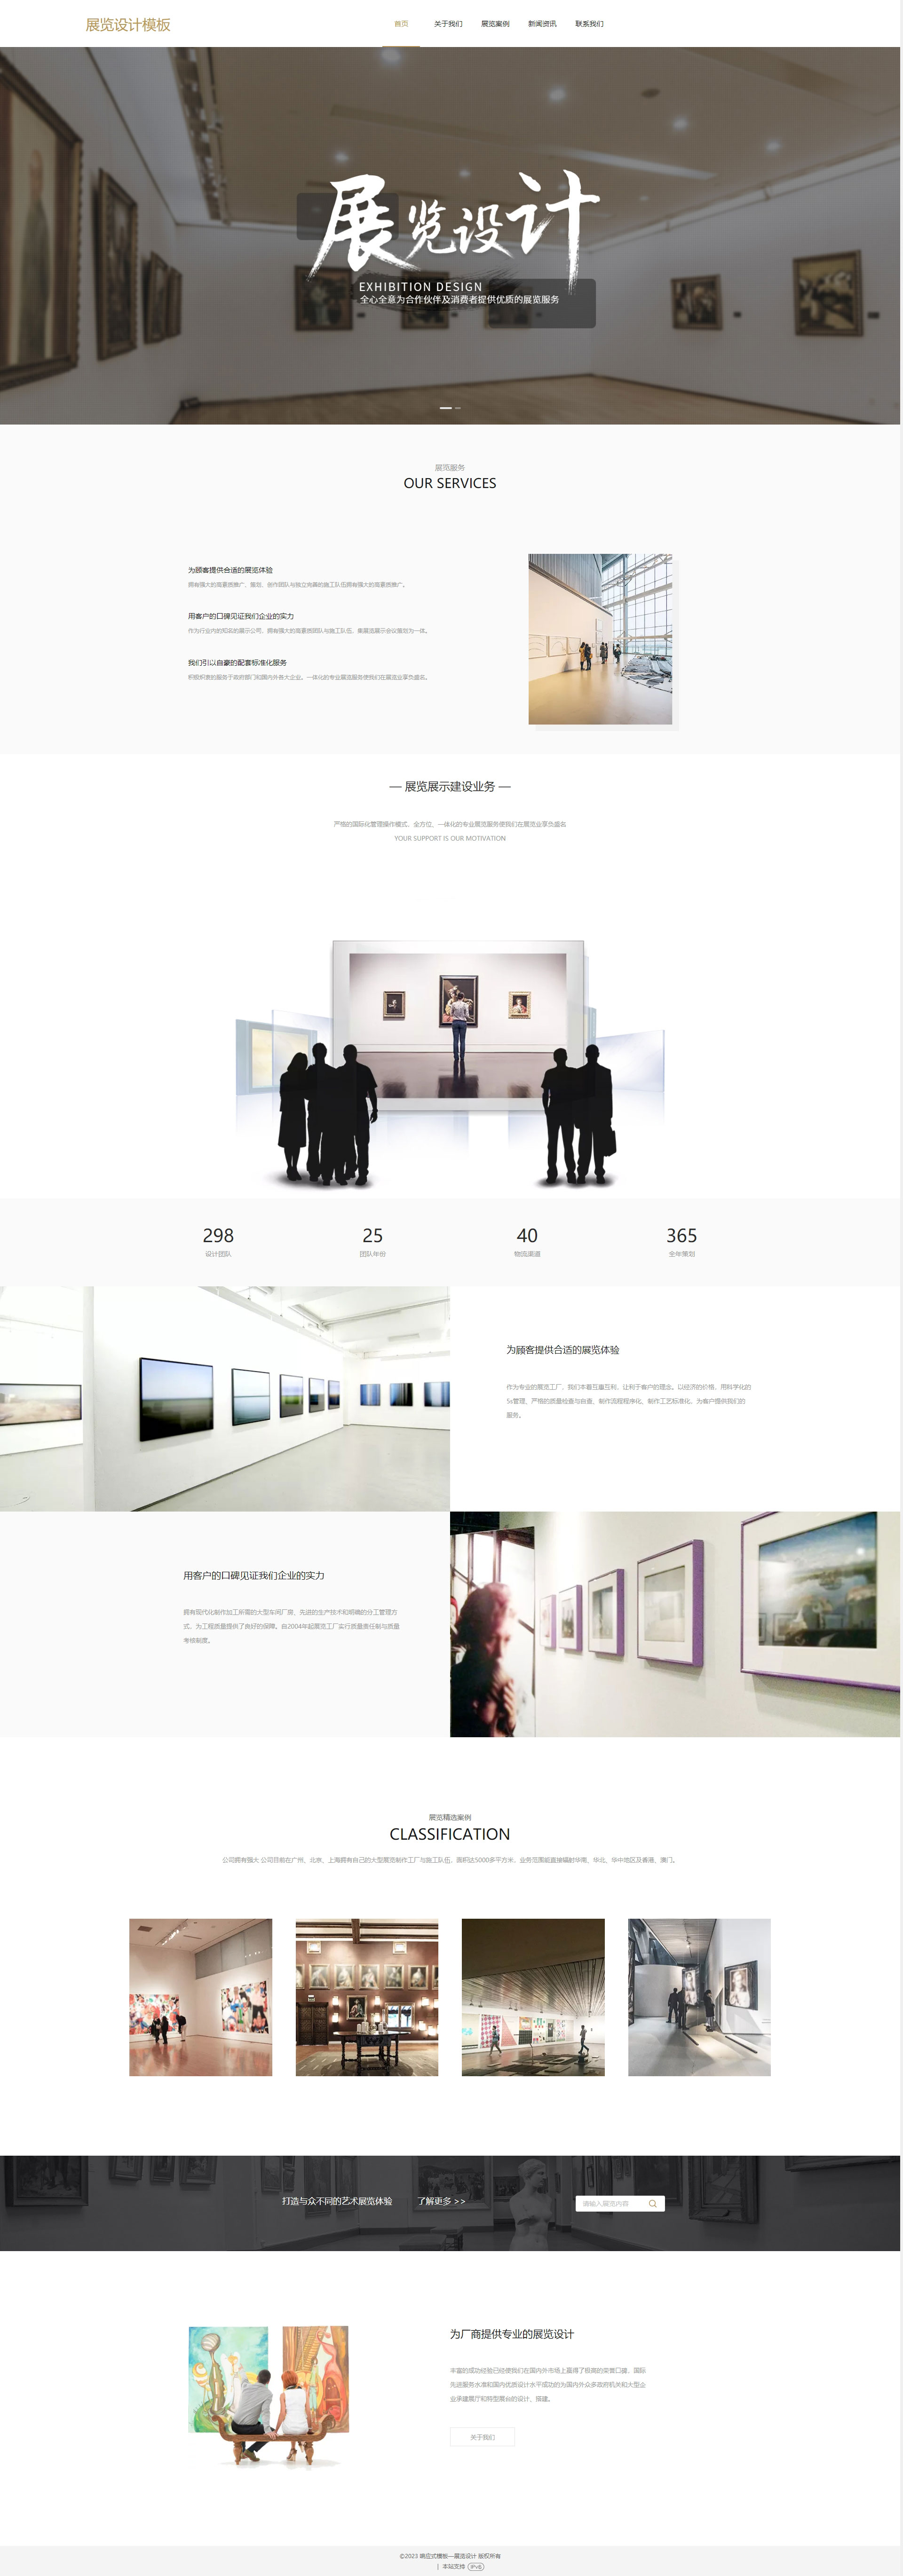 精选艺术展览设计自适应网站模板